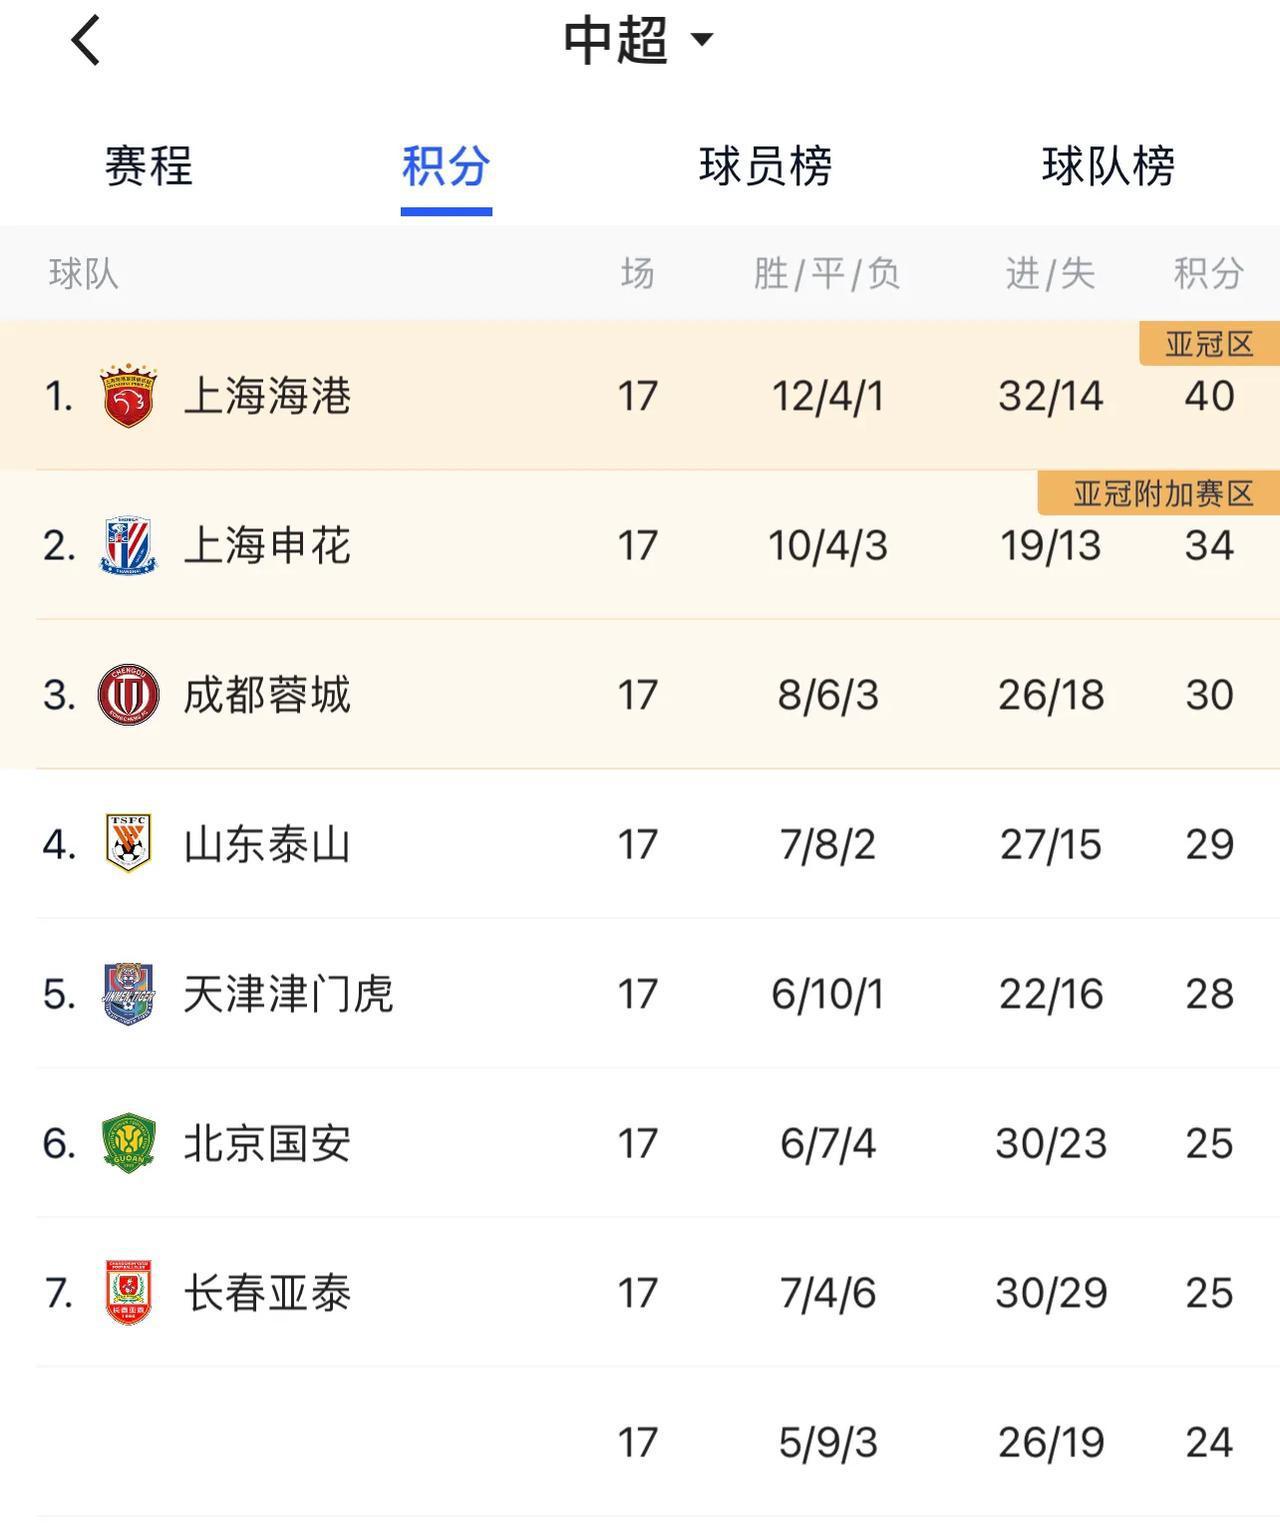 中超联赛第17轮结束，最新积分榜。
1、上海海港轻松获胜，稳居榜首。
2、上海申(2)